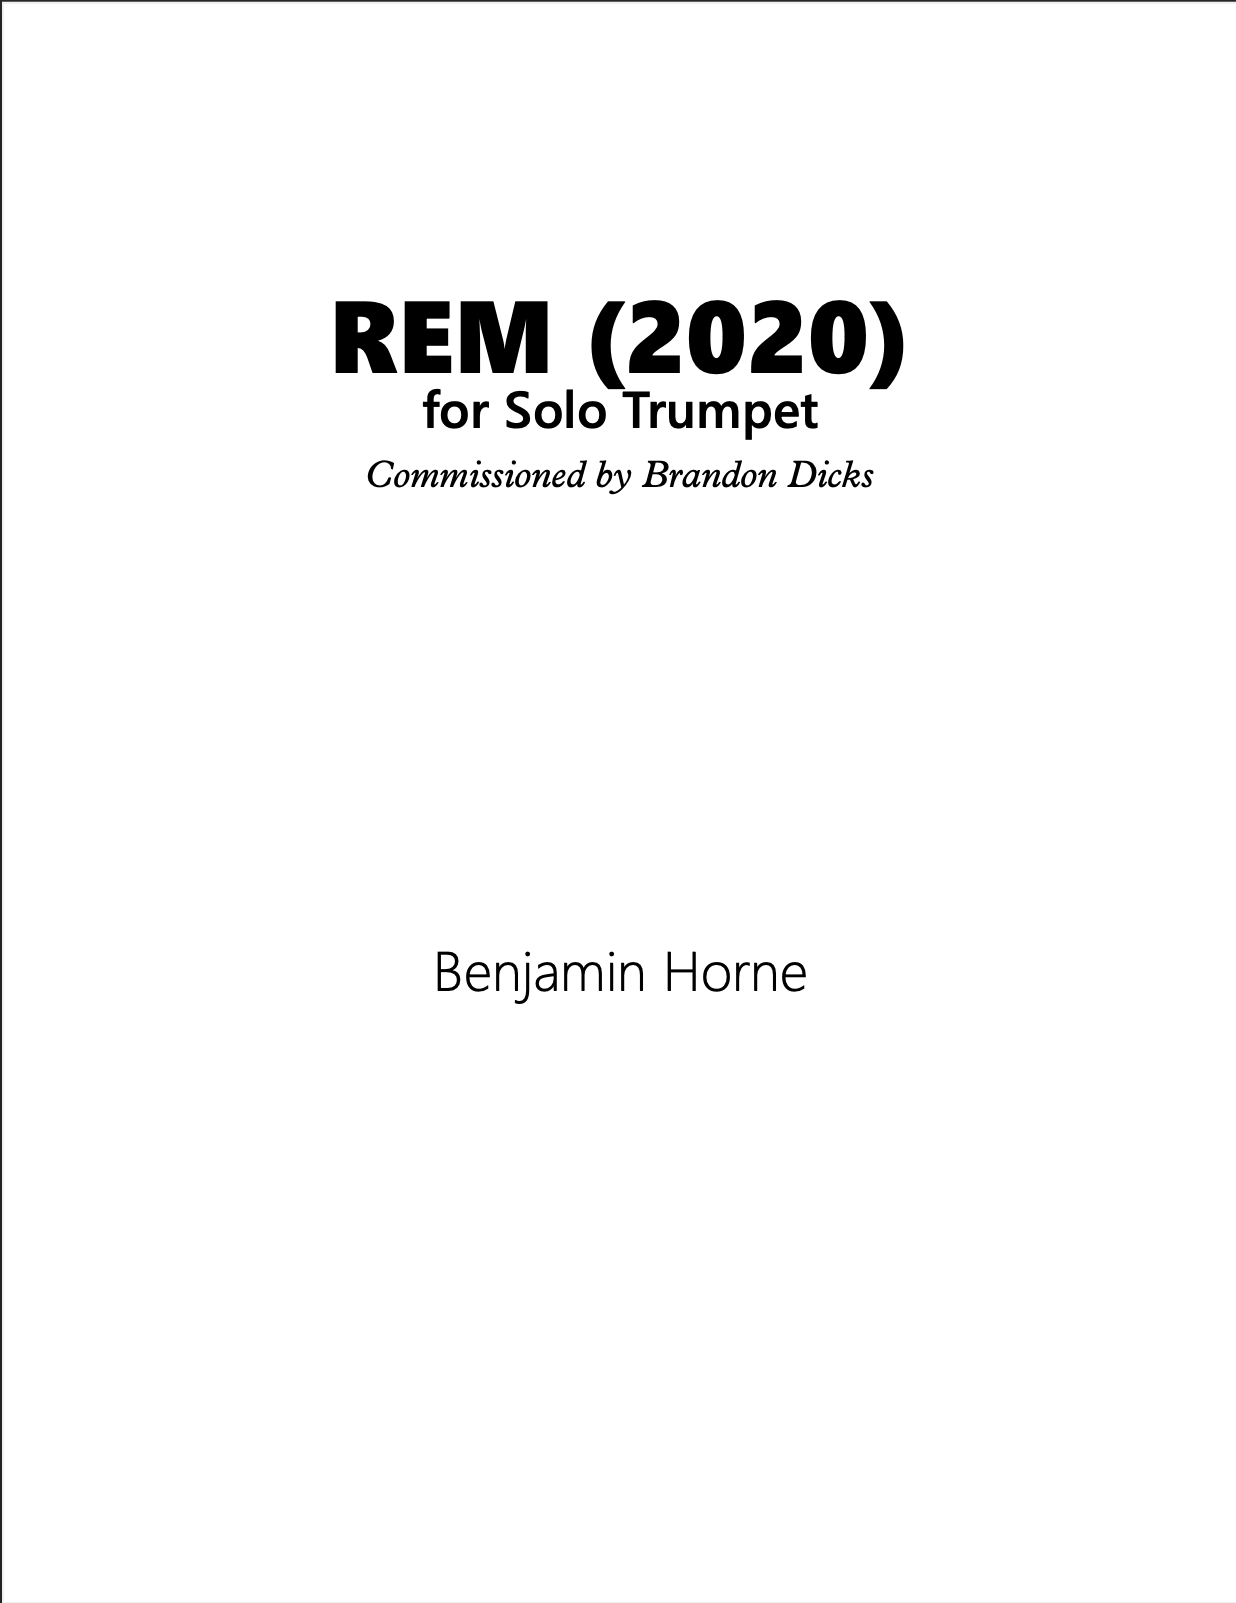 REM by Benjamin Horne